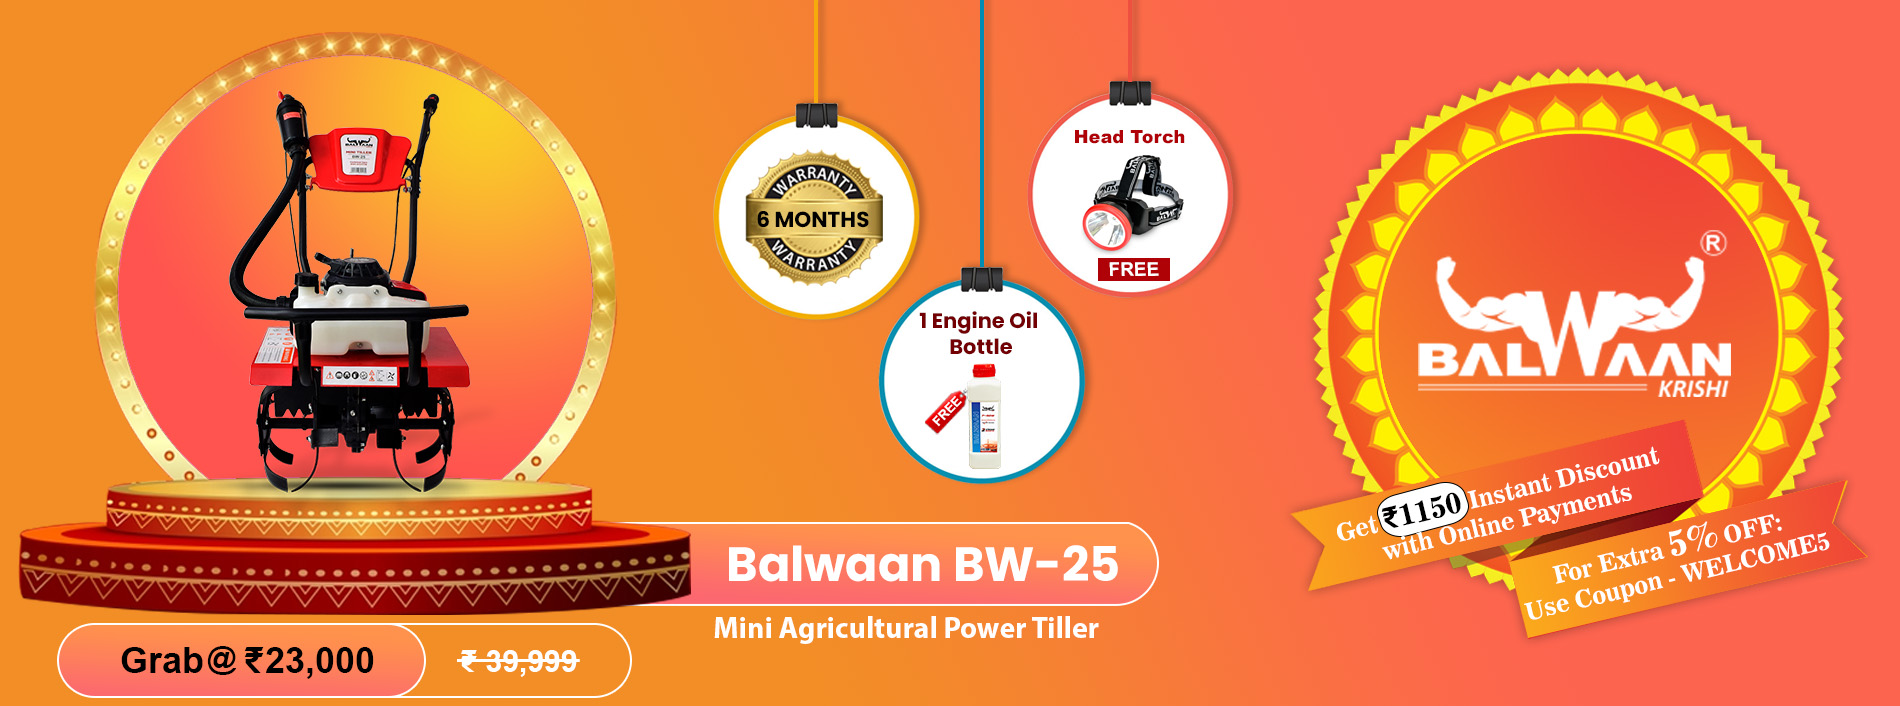 Balwaan_mini_tiller_BW-25